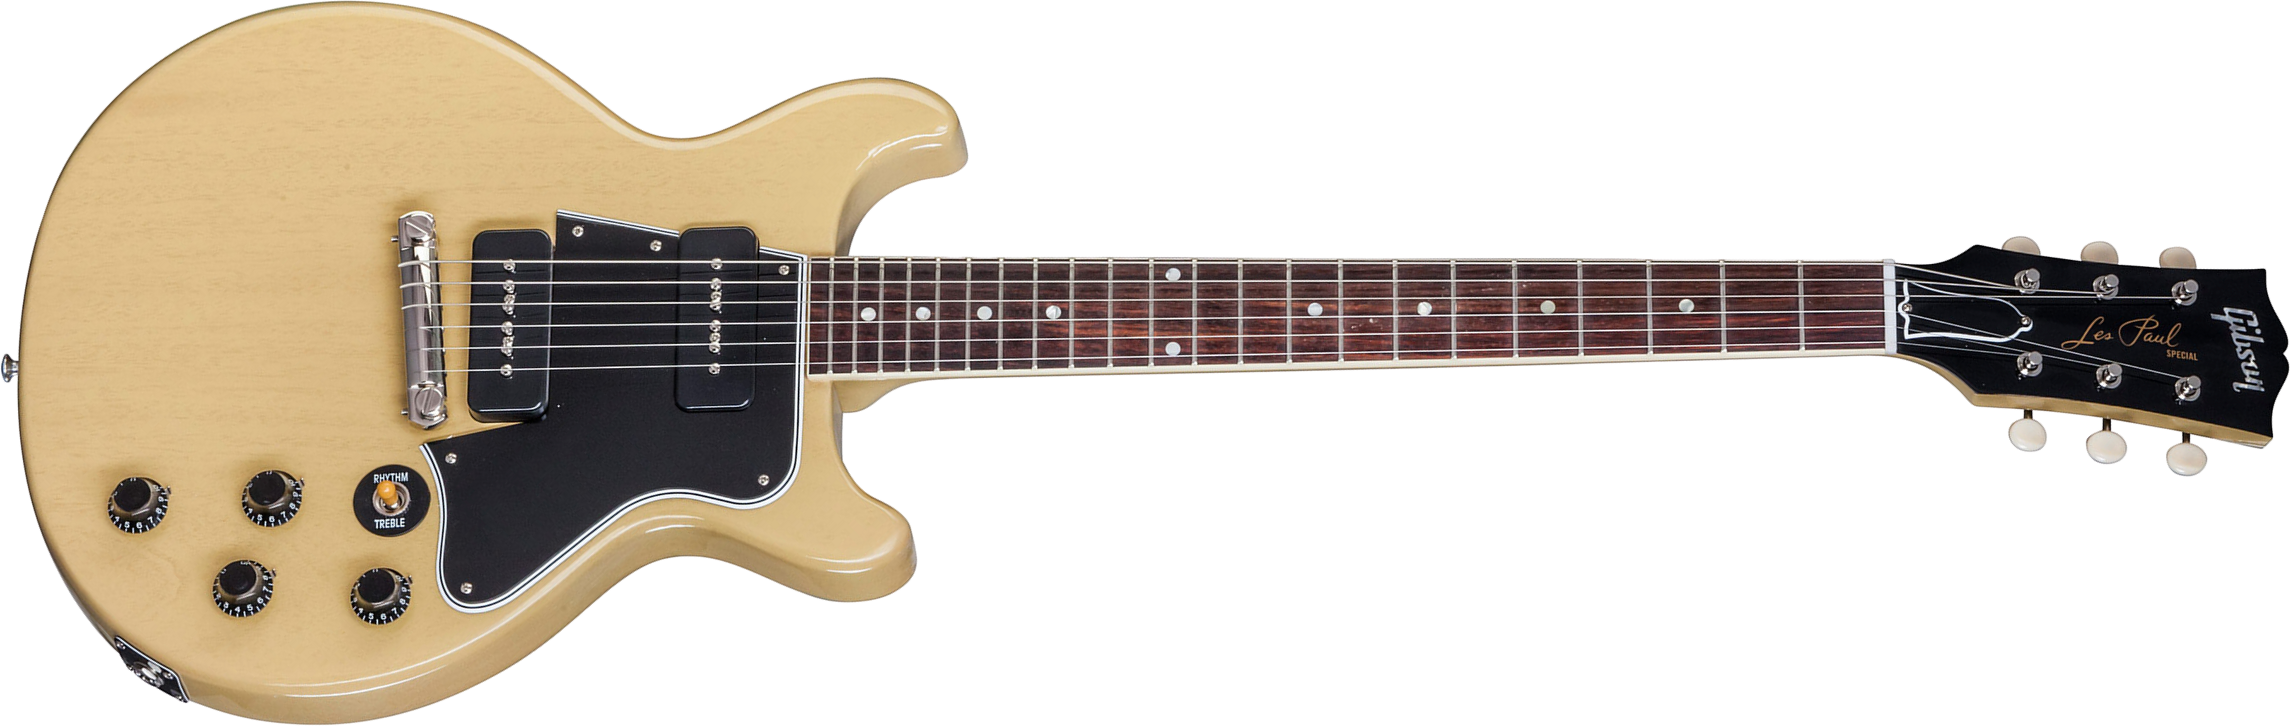 Gibson Custom Shop Les Paul Special Double Cut 2p90 Ht Rw - Tv Yellow - Guitarra eléctrica de doble corte - Main picture